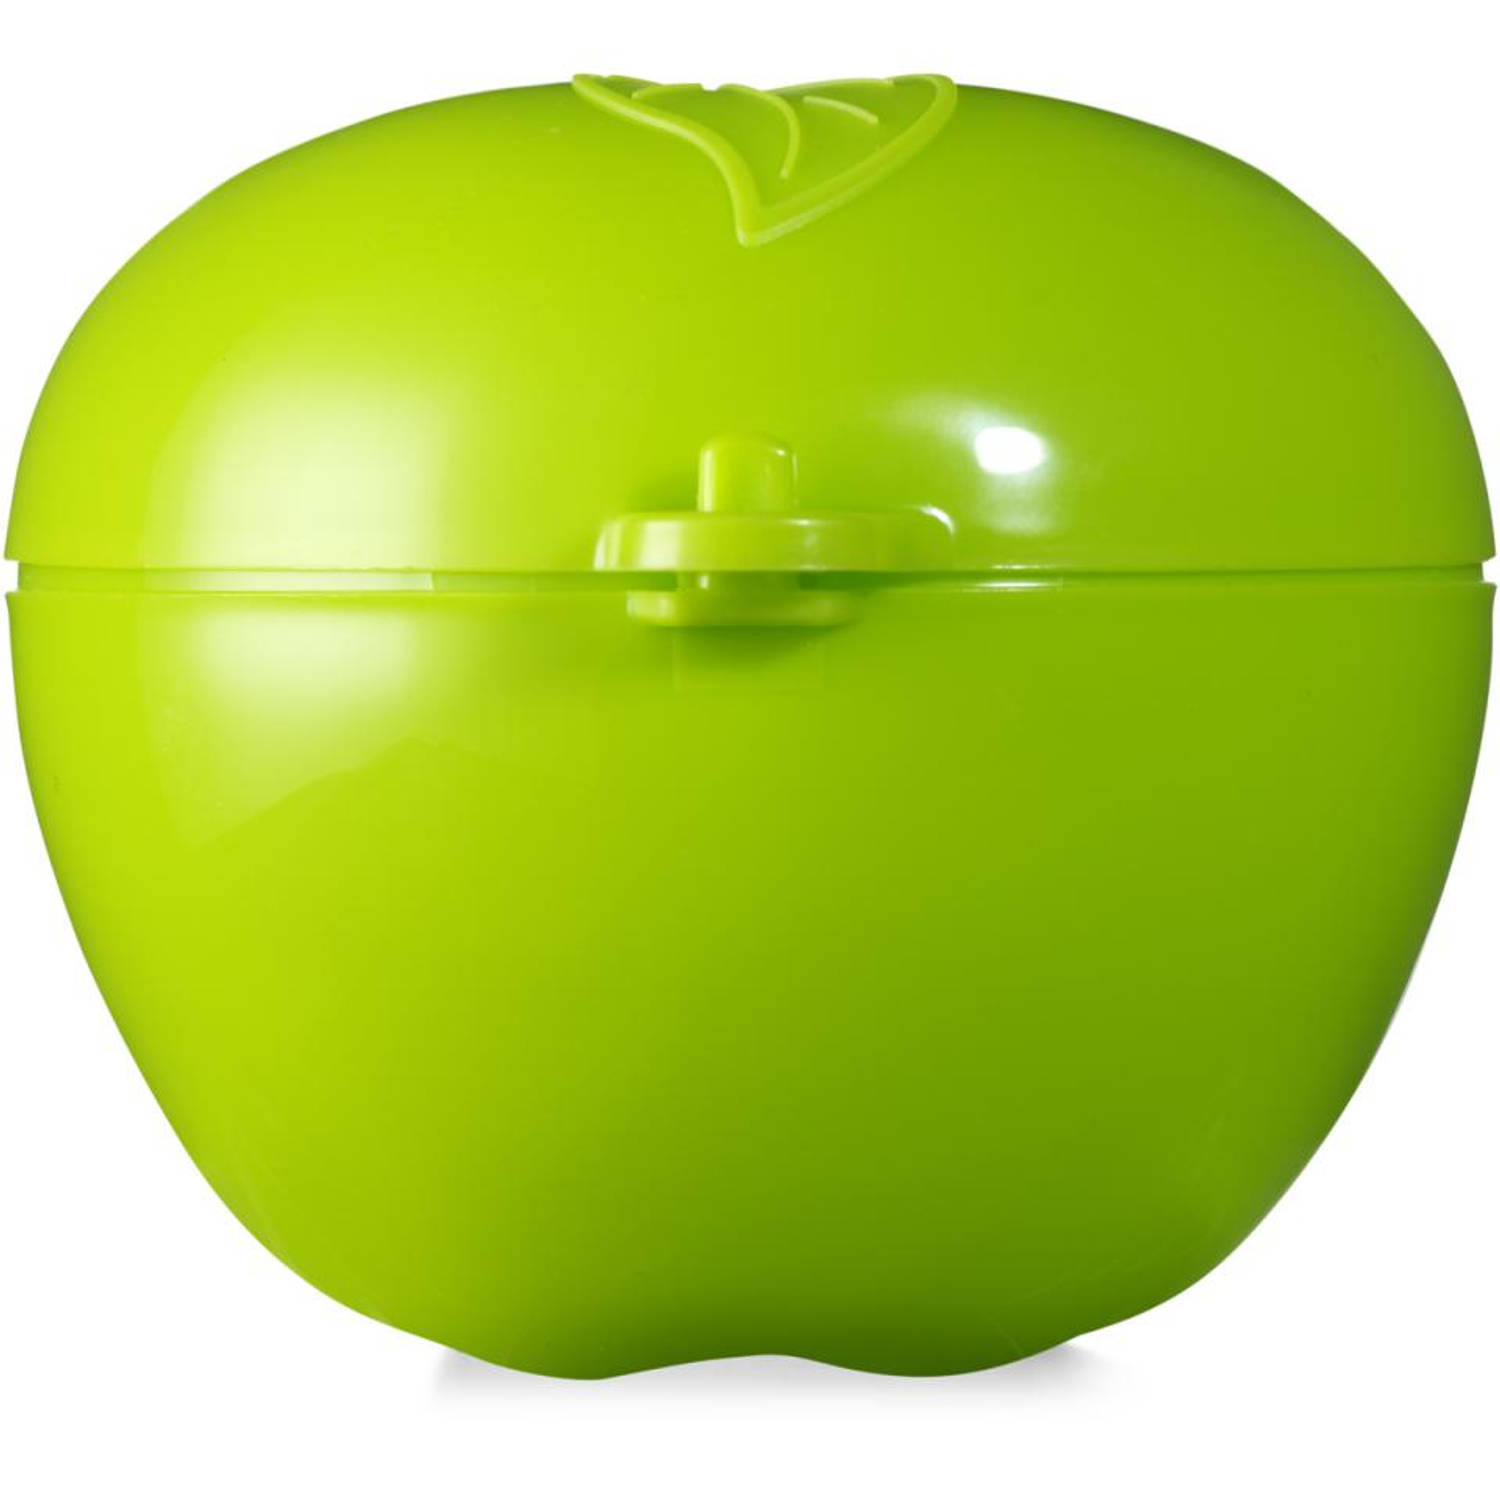 Rotho appelbox - Ø 11 x 8,5 cm - groen